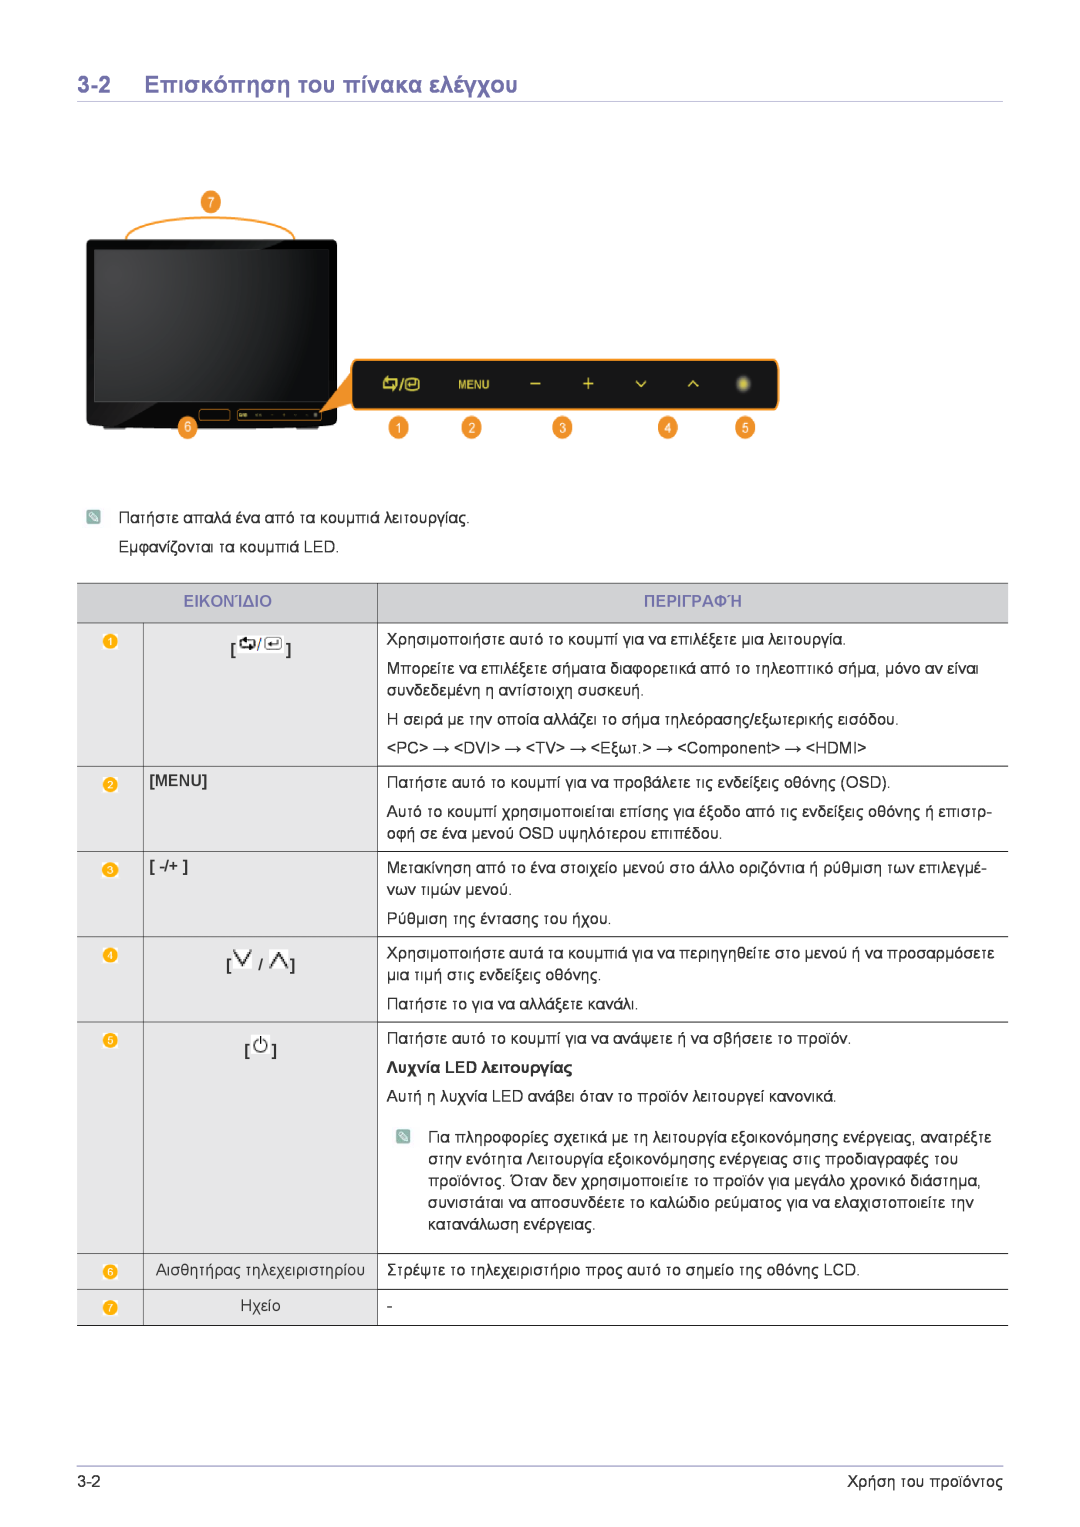 Samsung LS22FMDGF/EN, LS22FMDGF/XE 3-2 Επισκόπηση του πίνακα ελέγχου, Περιγραφή, Menu, Λυχνία LED λειτουργίας, Εικονίδιο 